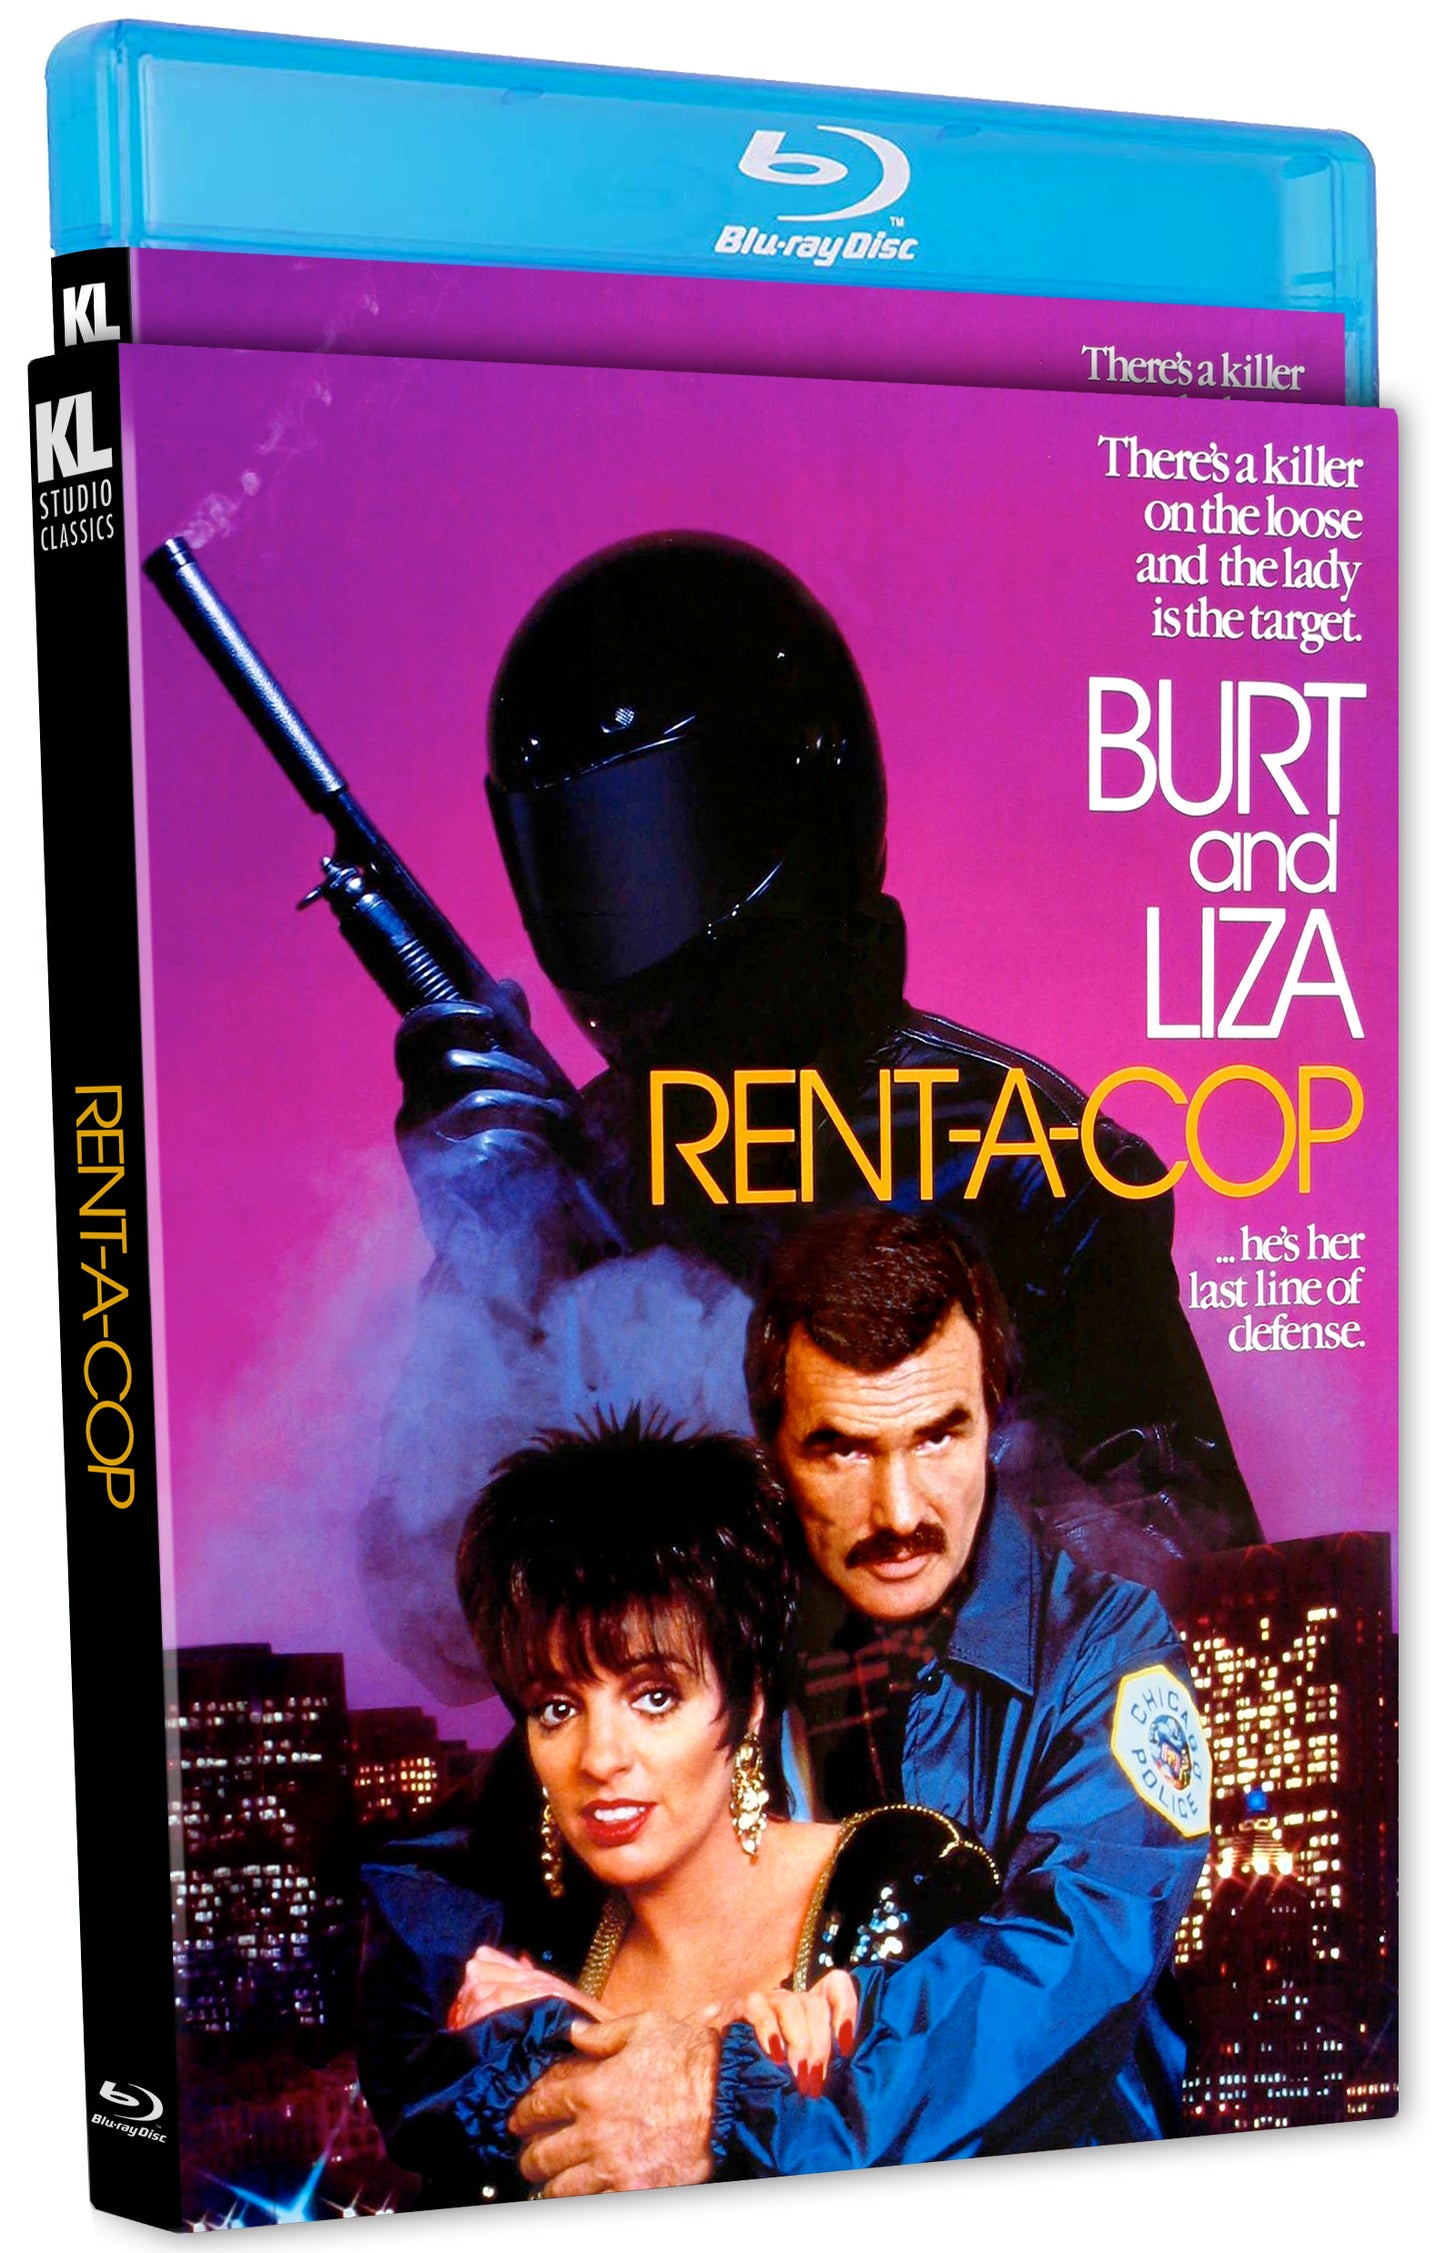 RENT-A-COP (1987)